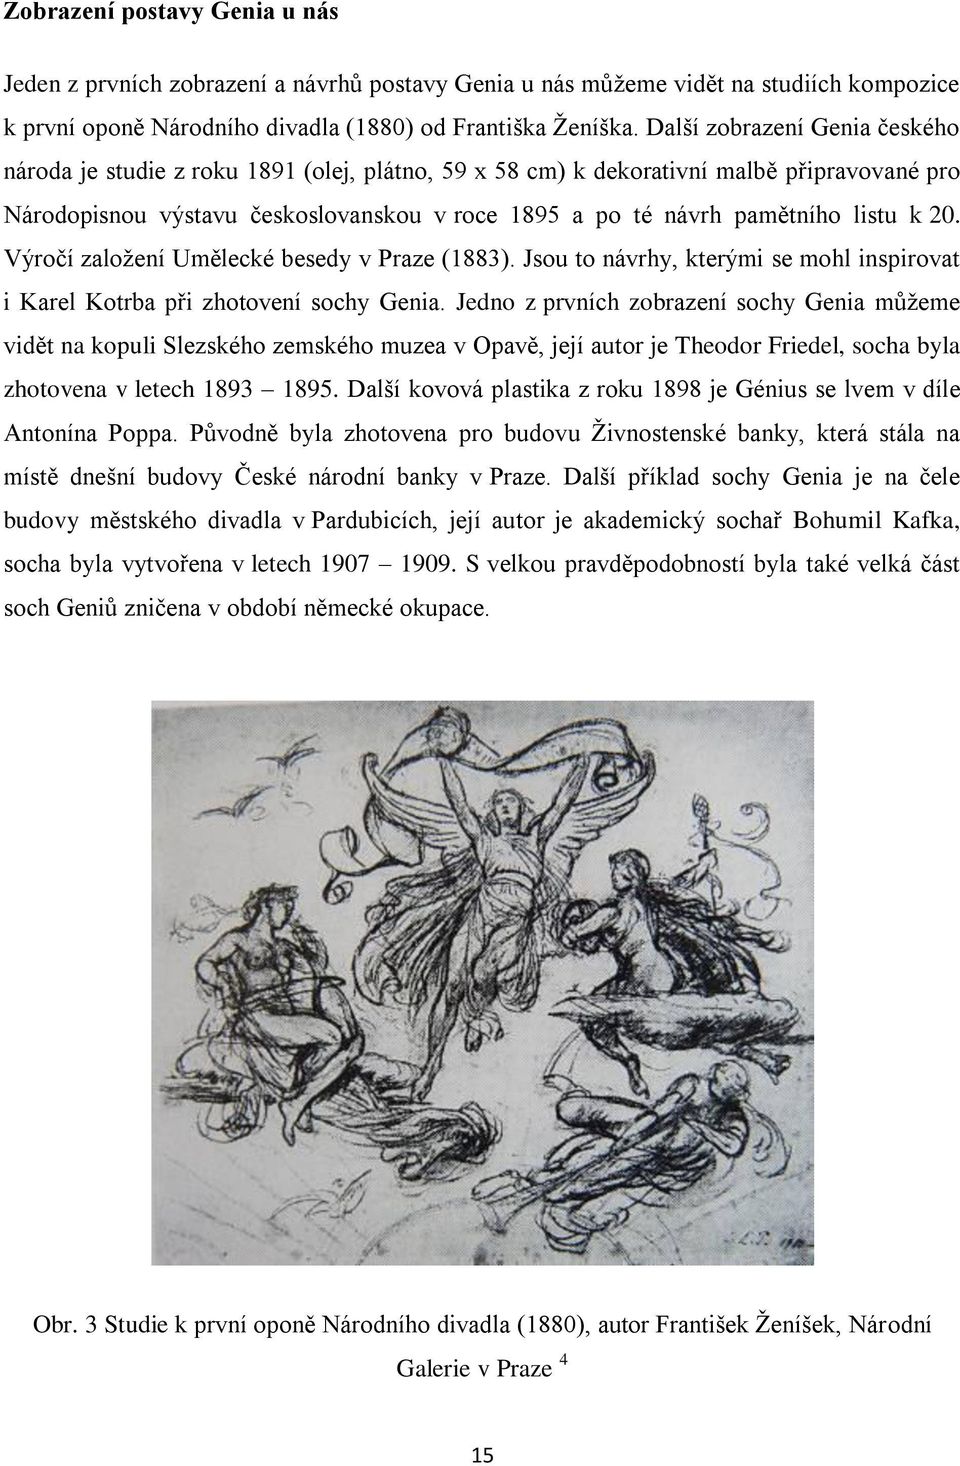 listu k 20. Výročí zaloţení Umělecké besedy v Praze (1883). Jsou to návrhy, kterými se mohl inspirovat i Karel Kotrba při zhotovení sochy Genia.